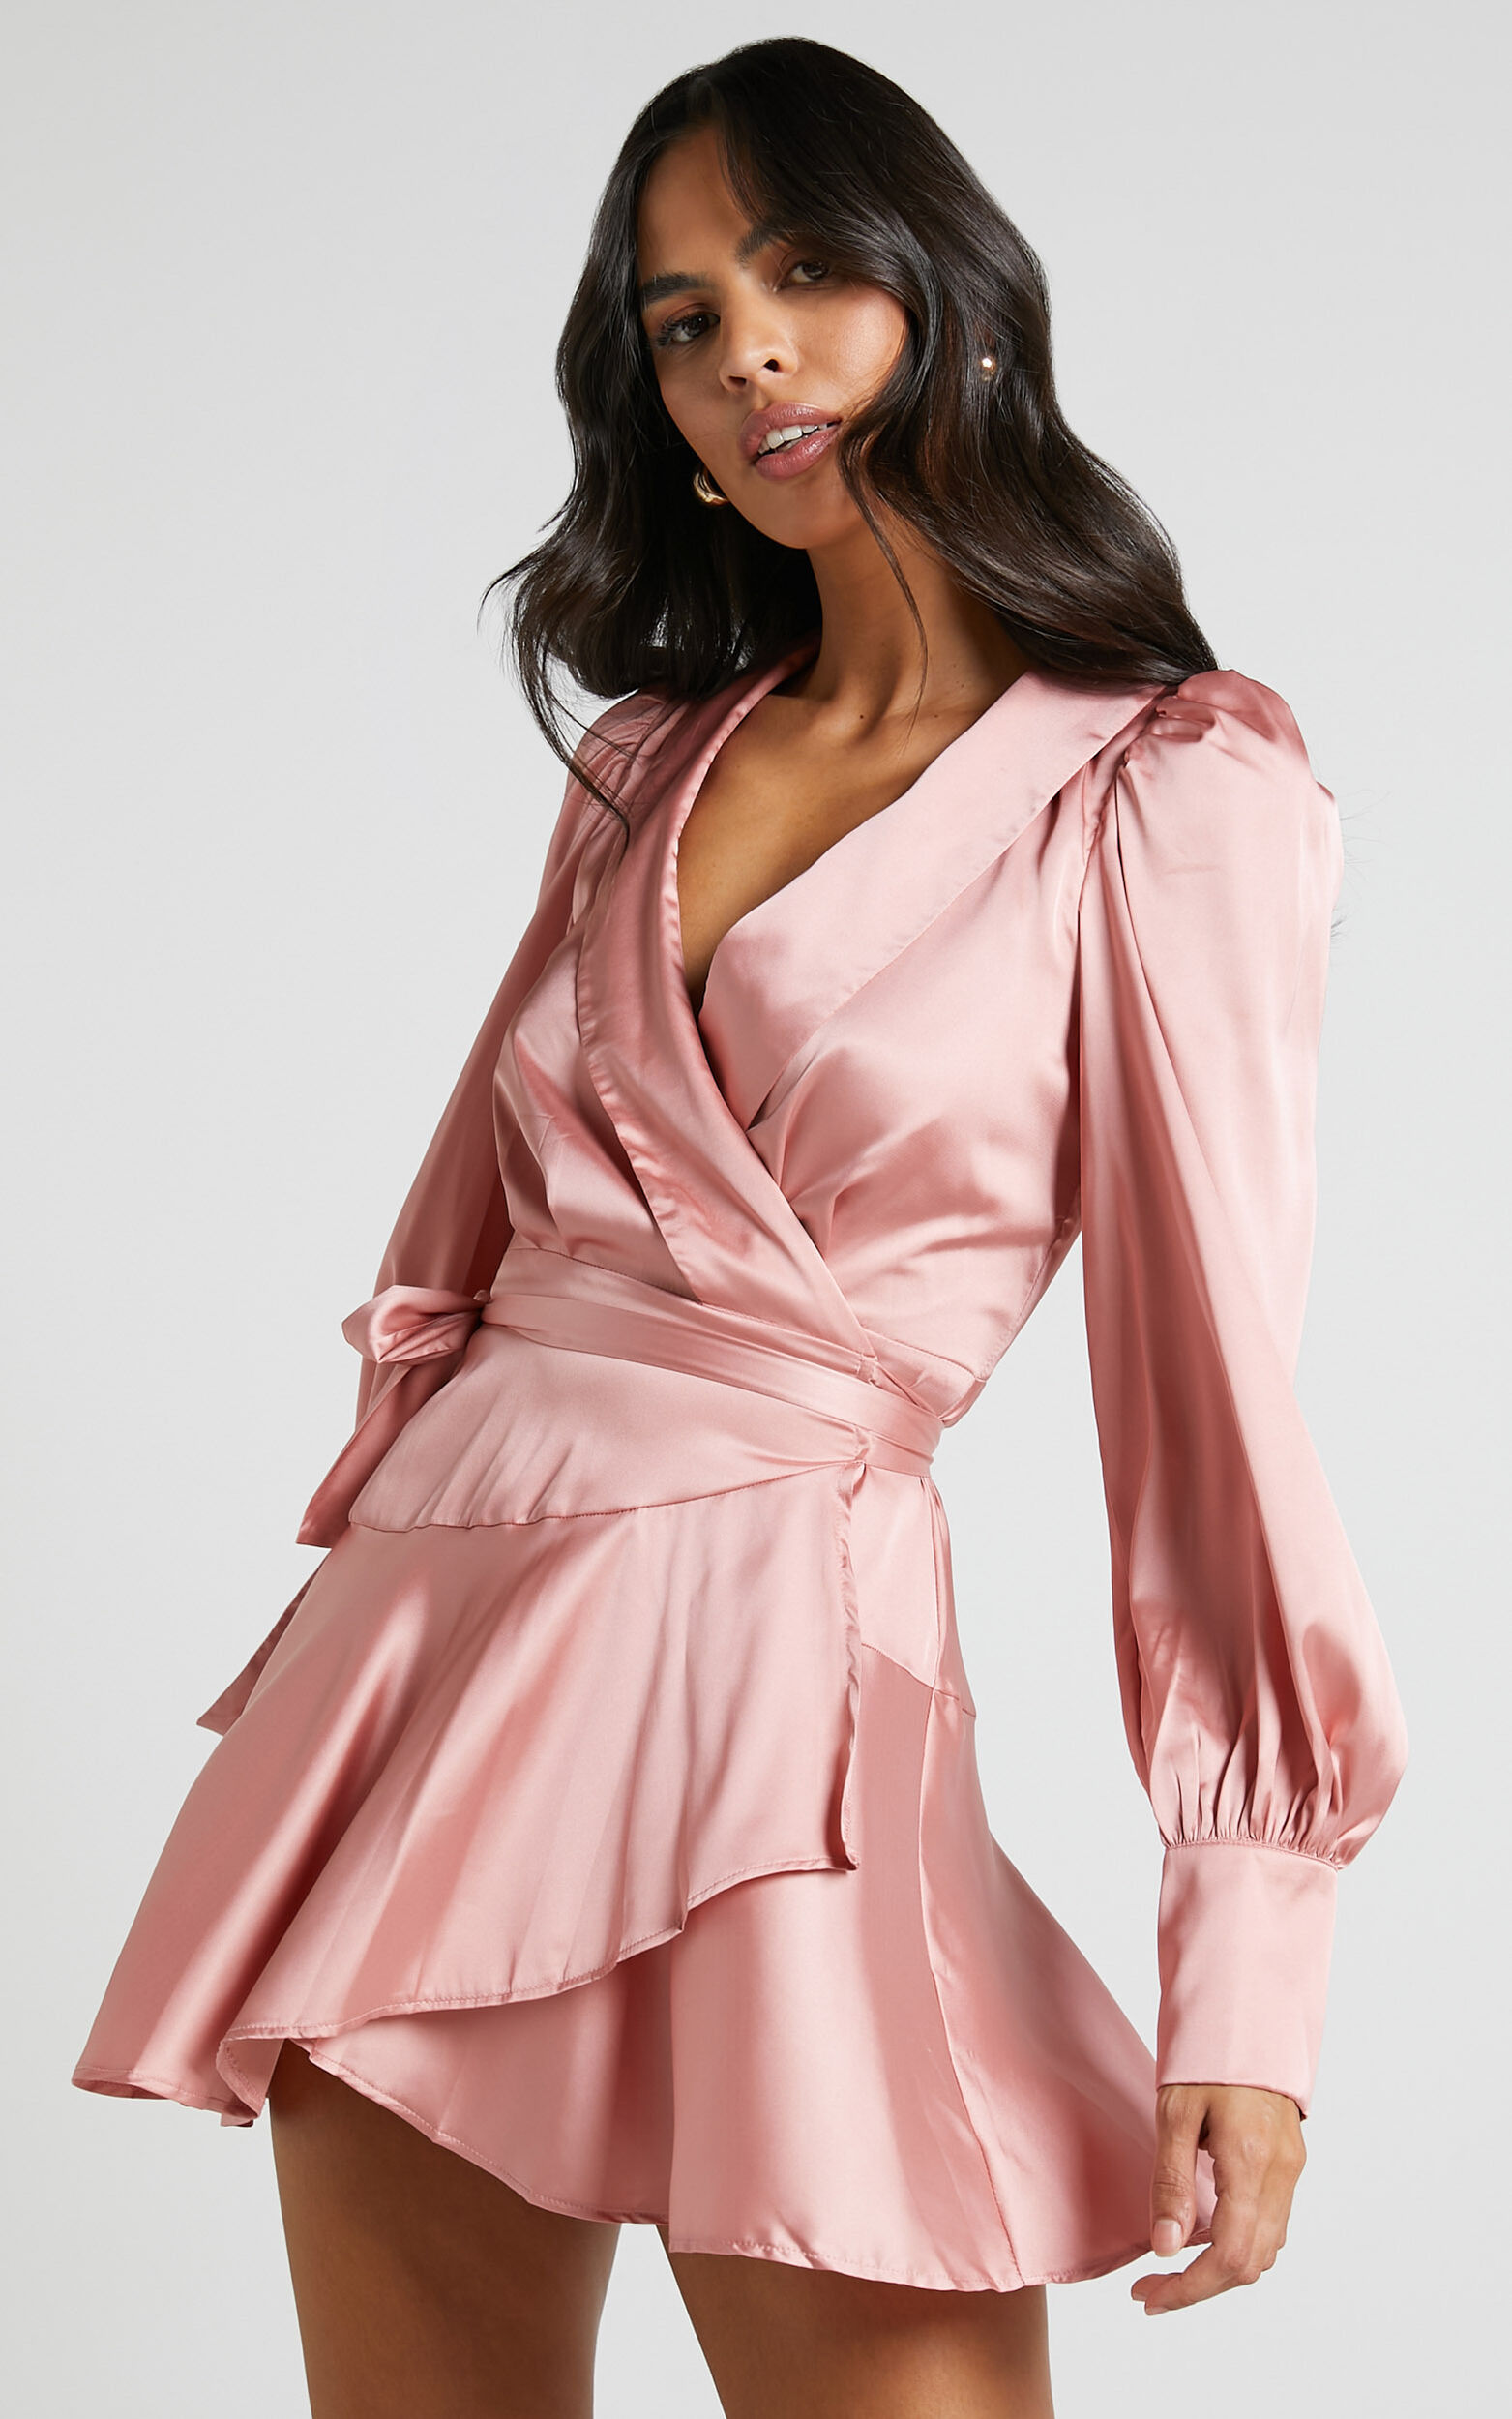 Breeana Mini Dress - Long Sleeve Wrap Dress in Dusty Pink - 04, PNK1